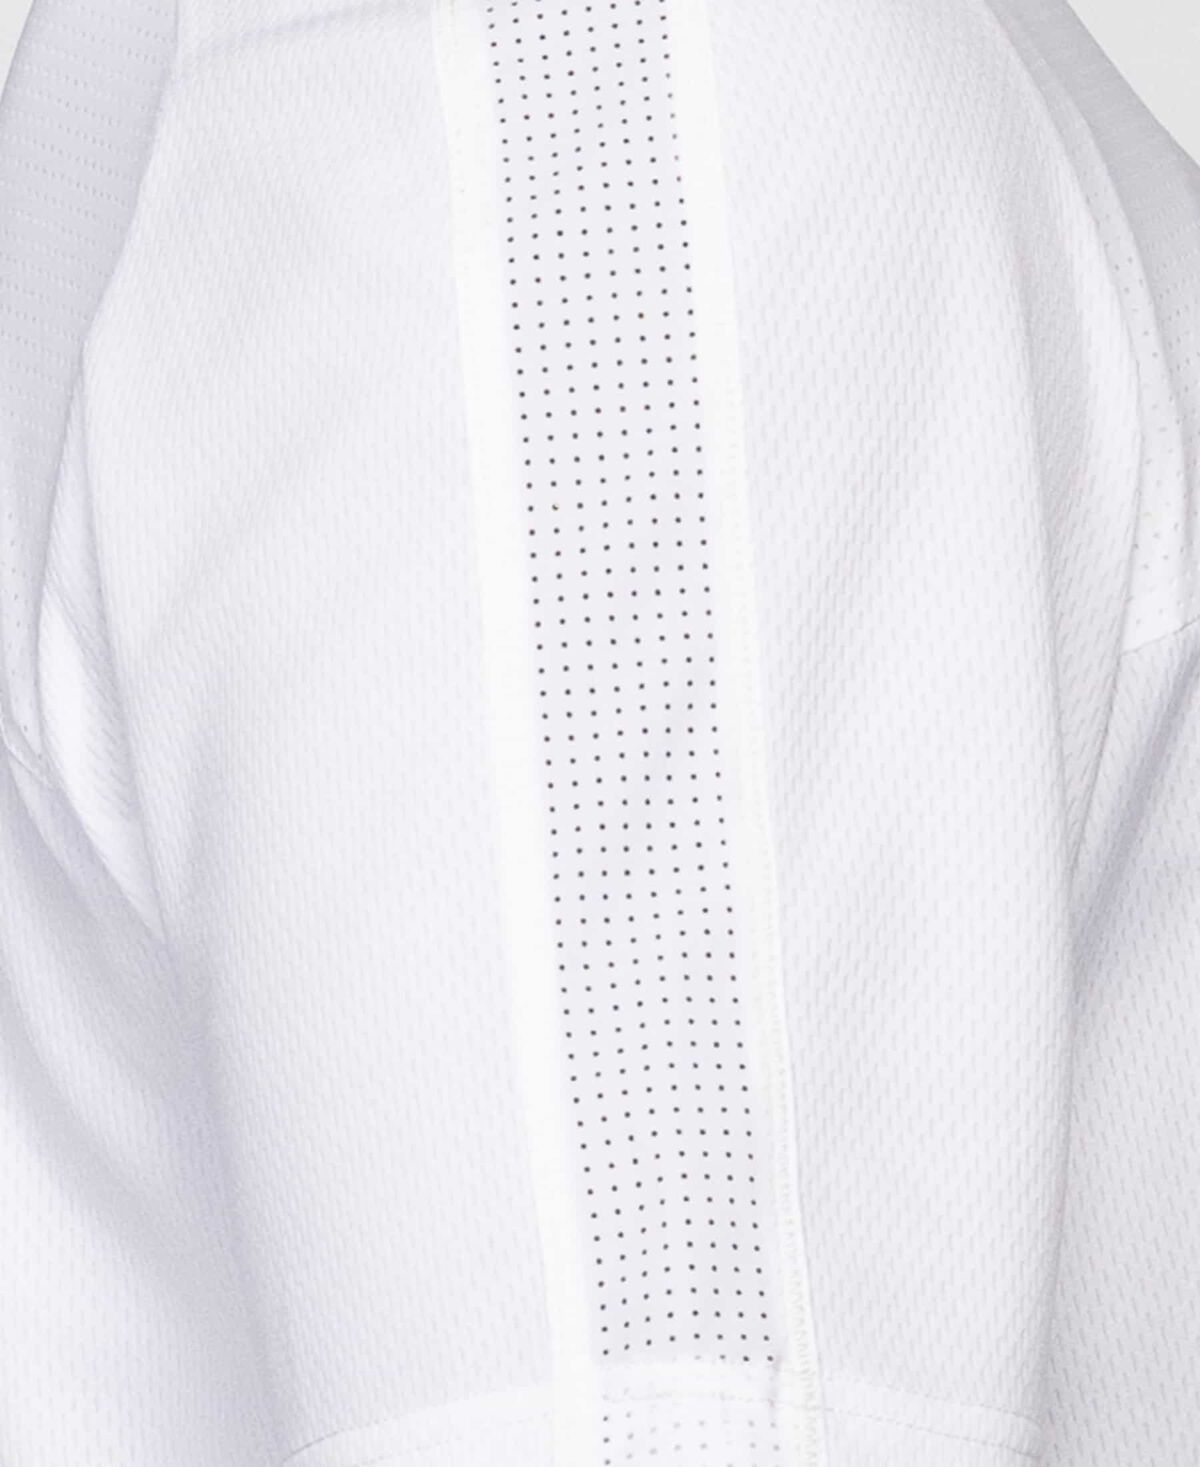 Men's 1/4 Zip Short Sleeve Anorak - White - Medium 